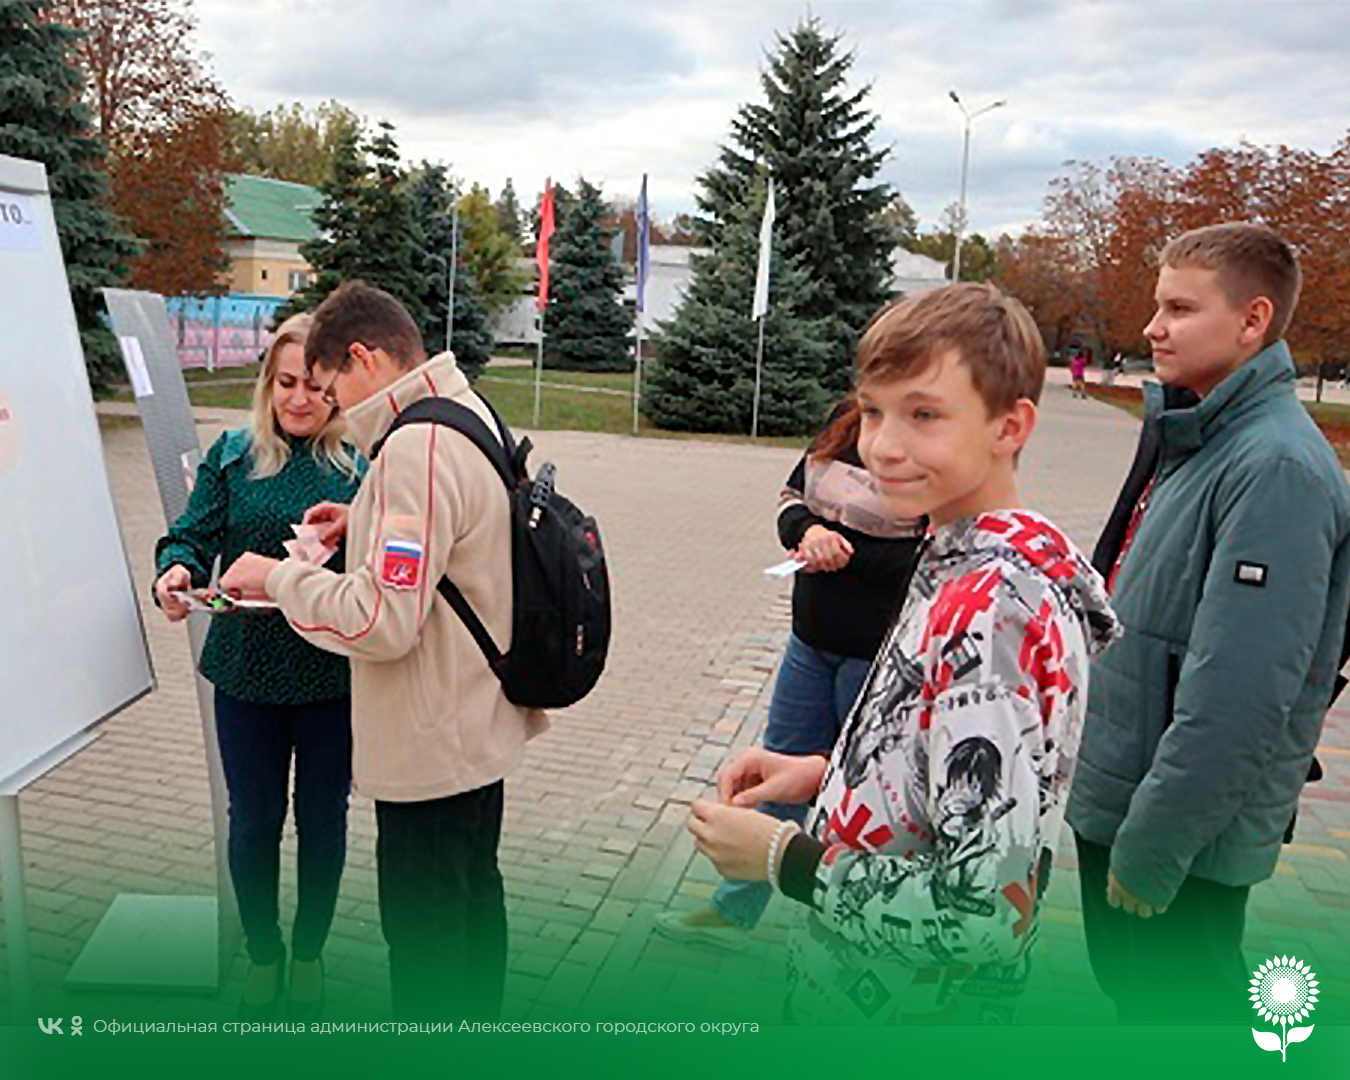 Сотрудники МБУК «Центральная библиотека Алексеевского городского округа» провели уличную акцию «Профессия каждая самая важная».